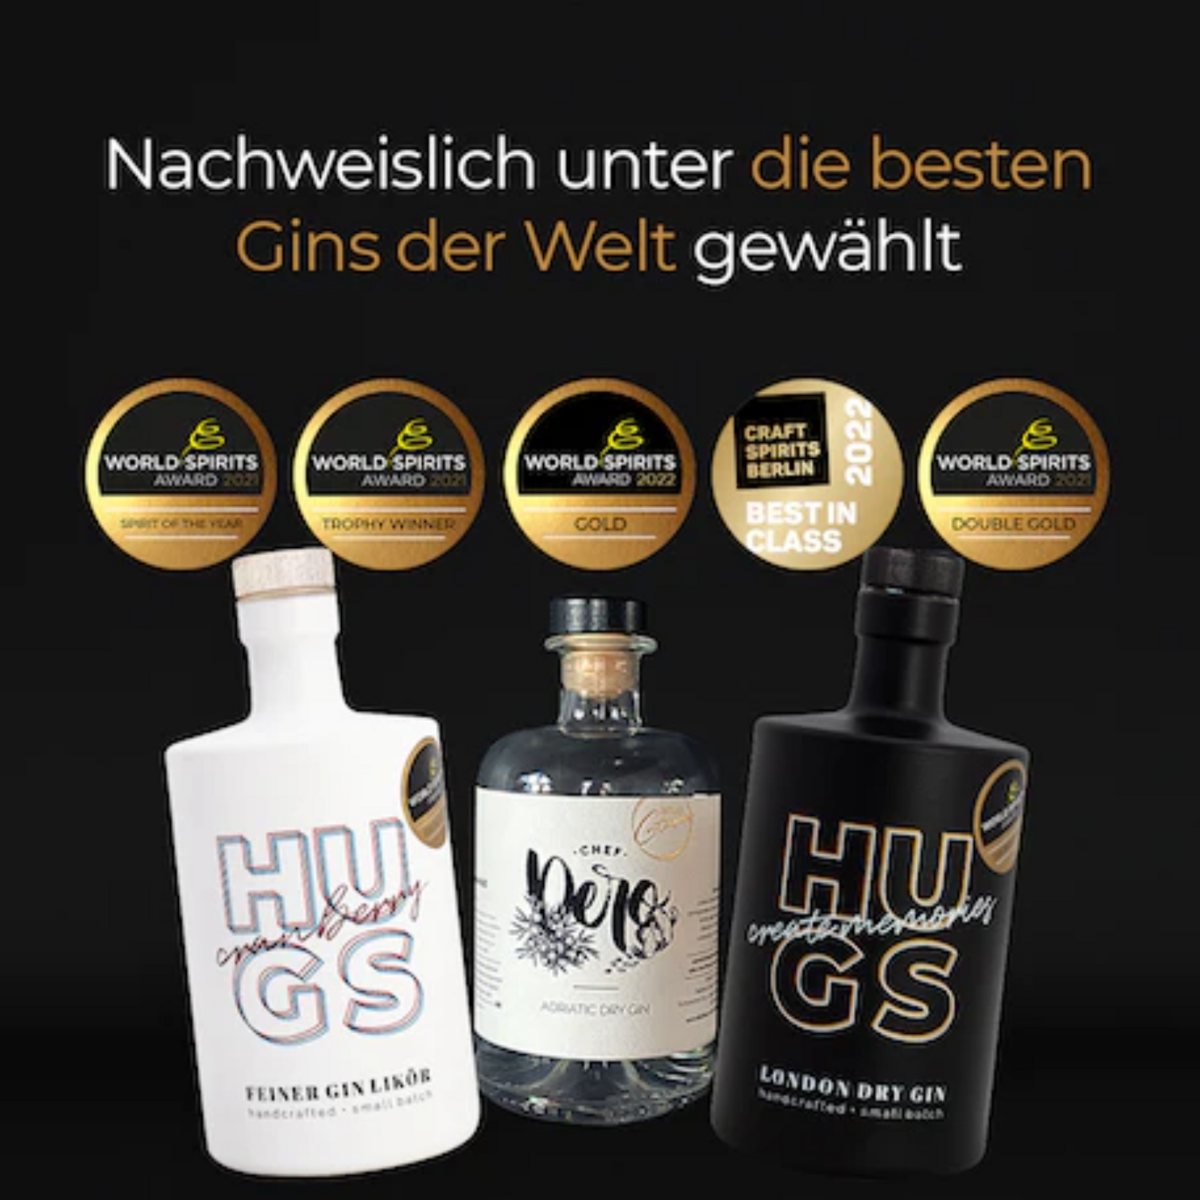 HUGS - Premium London Dry Gin (0,5l / 45% Vol.)